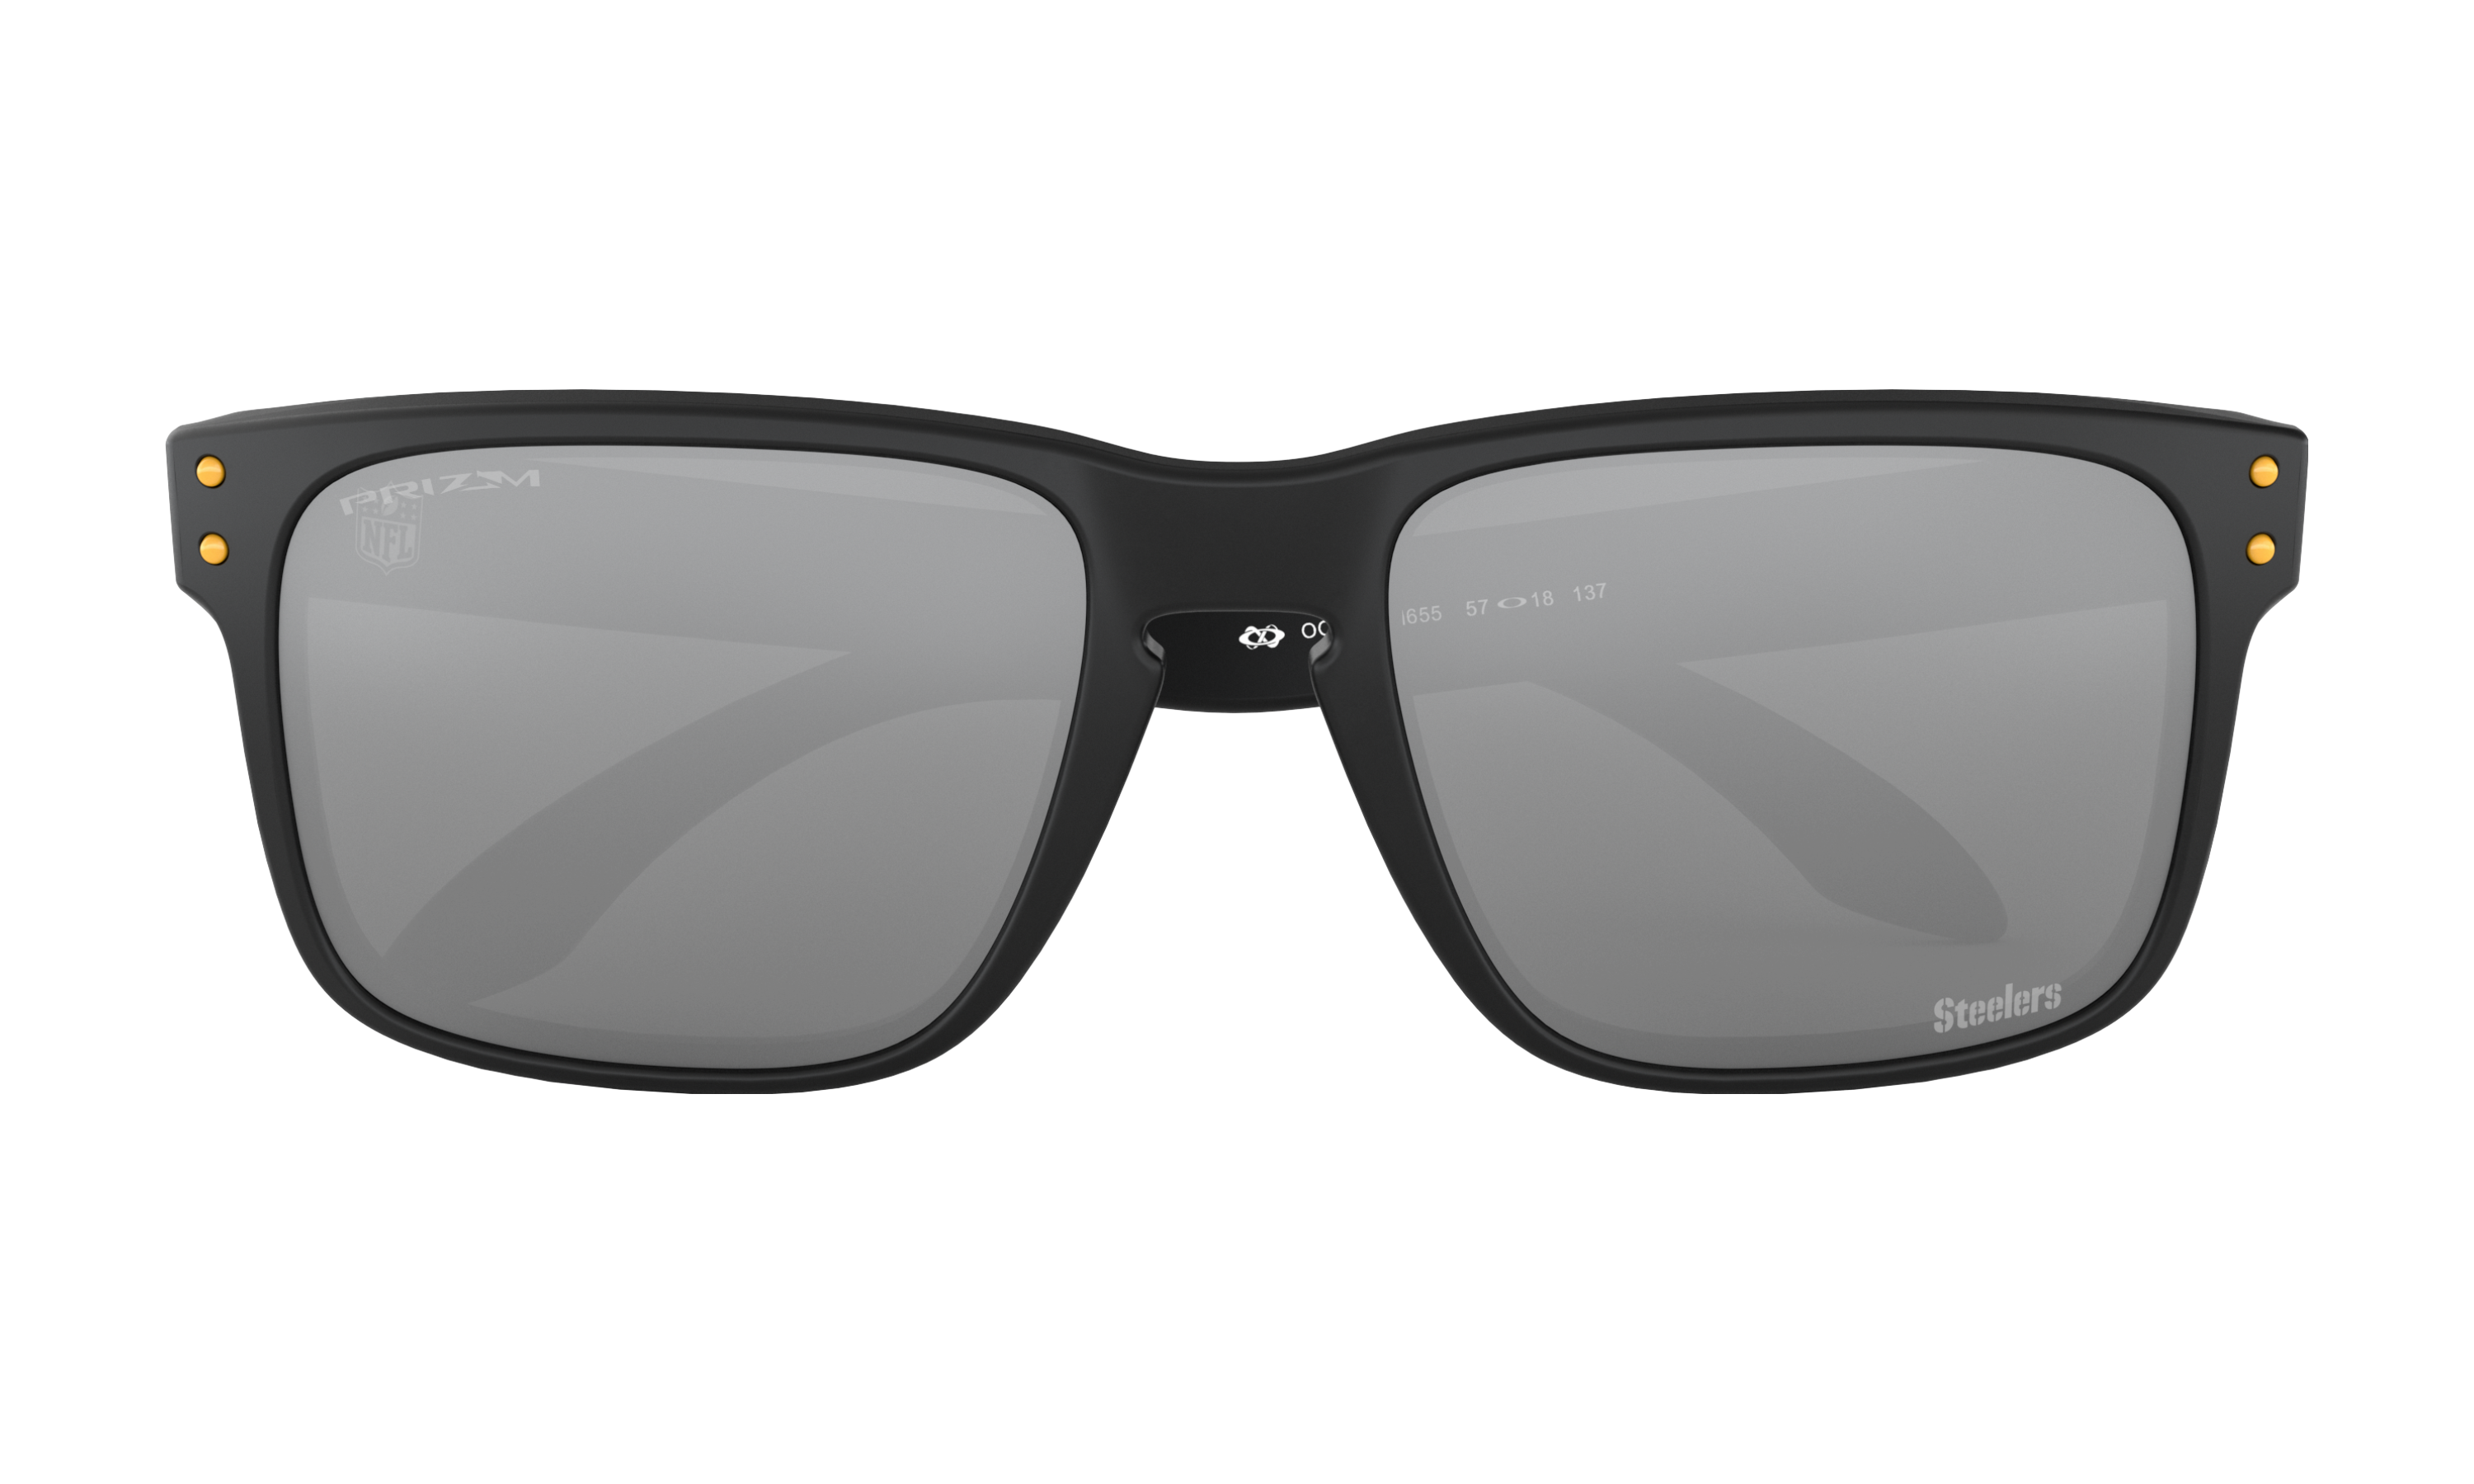 steelers oakley sunglasses